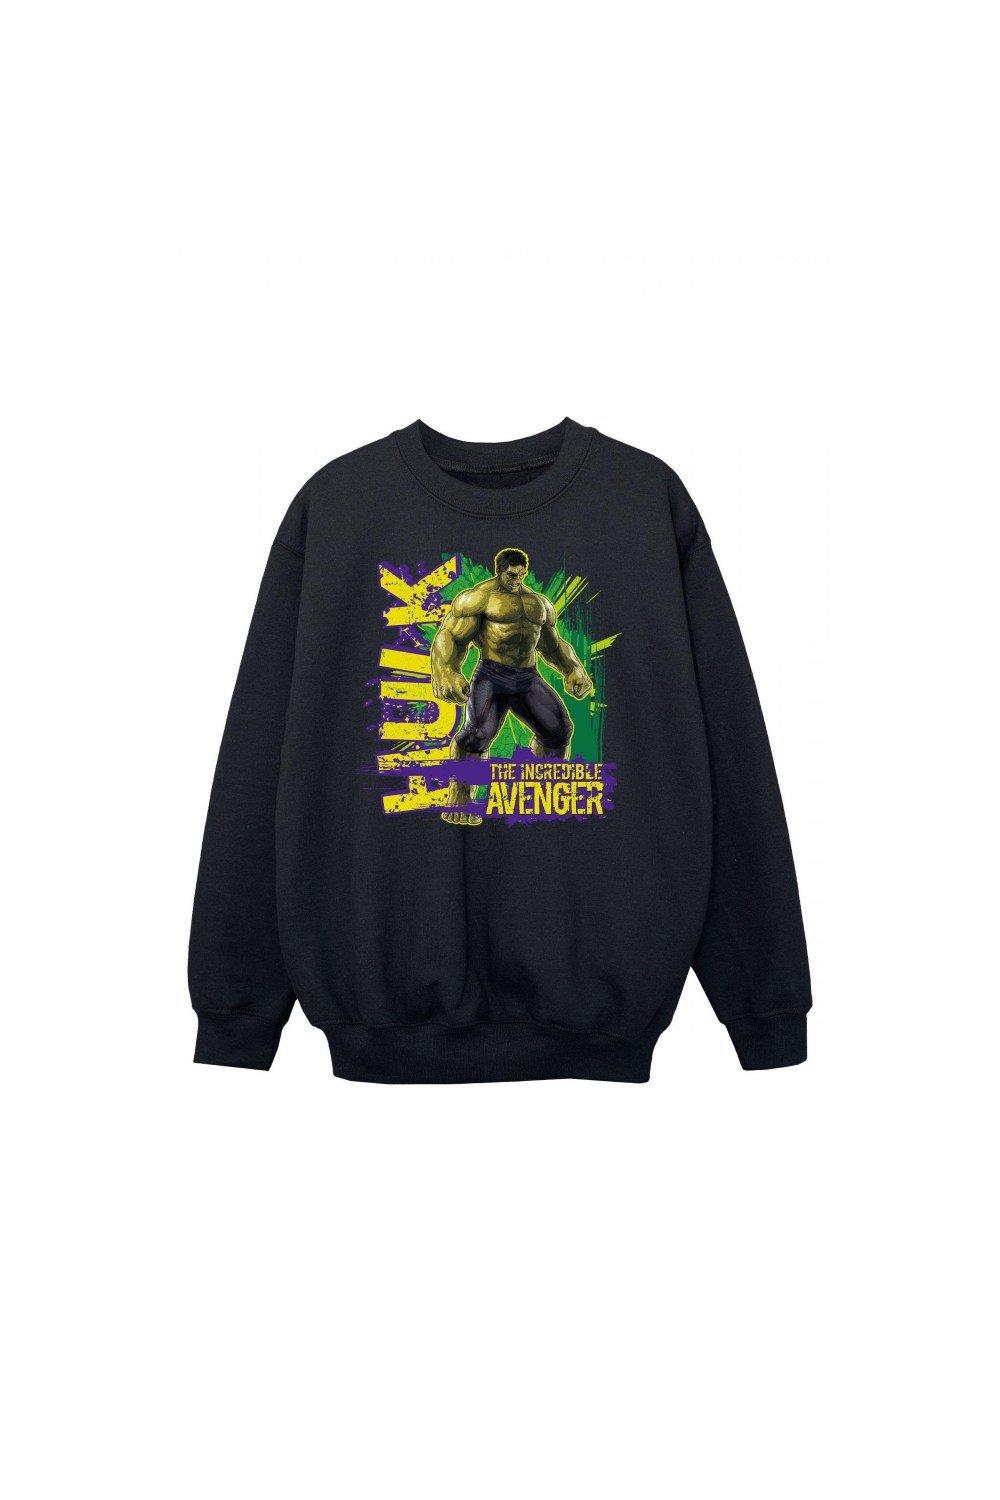 Incredible Avenger Sweatshirt